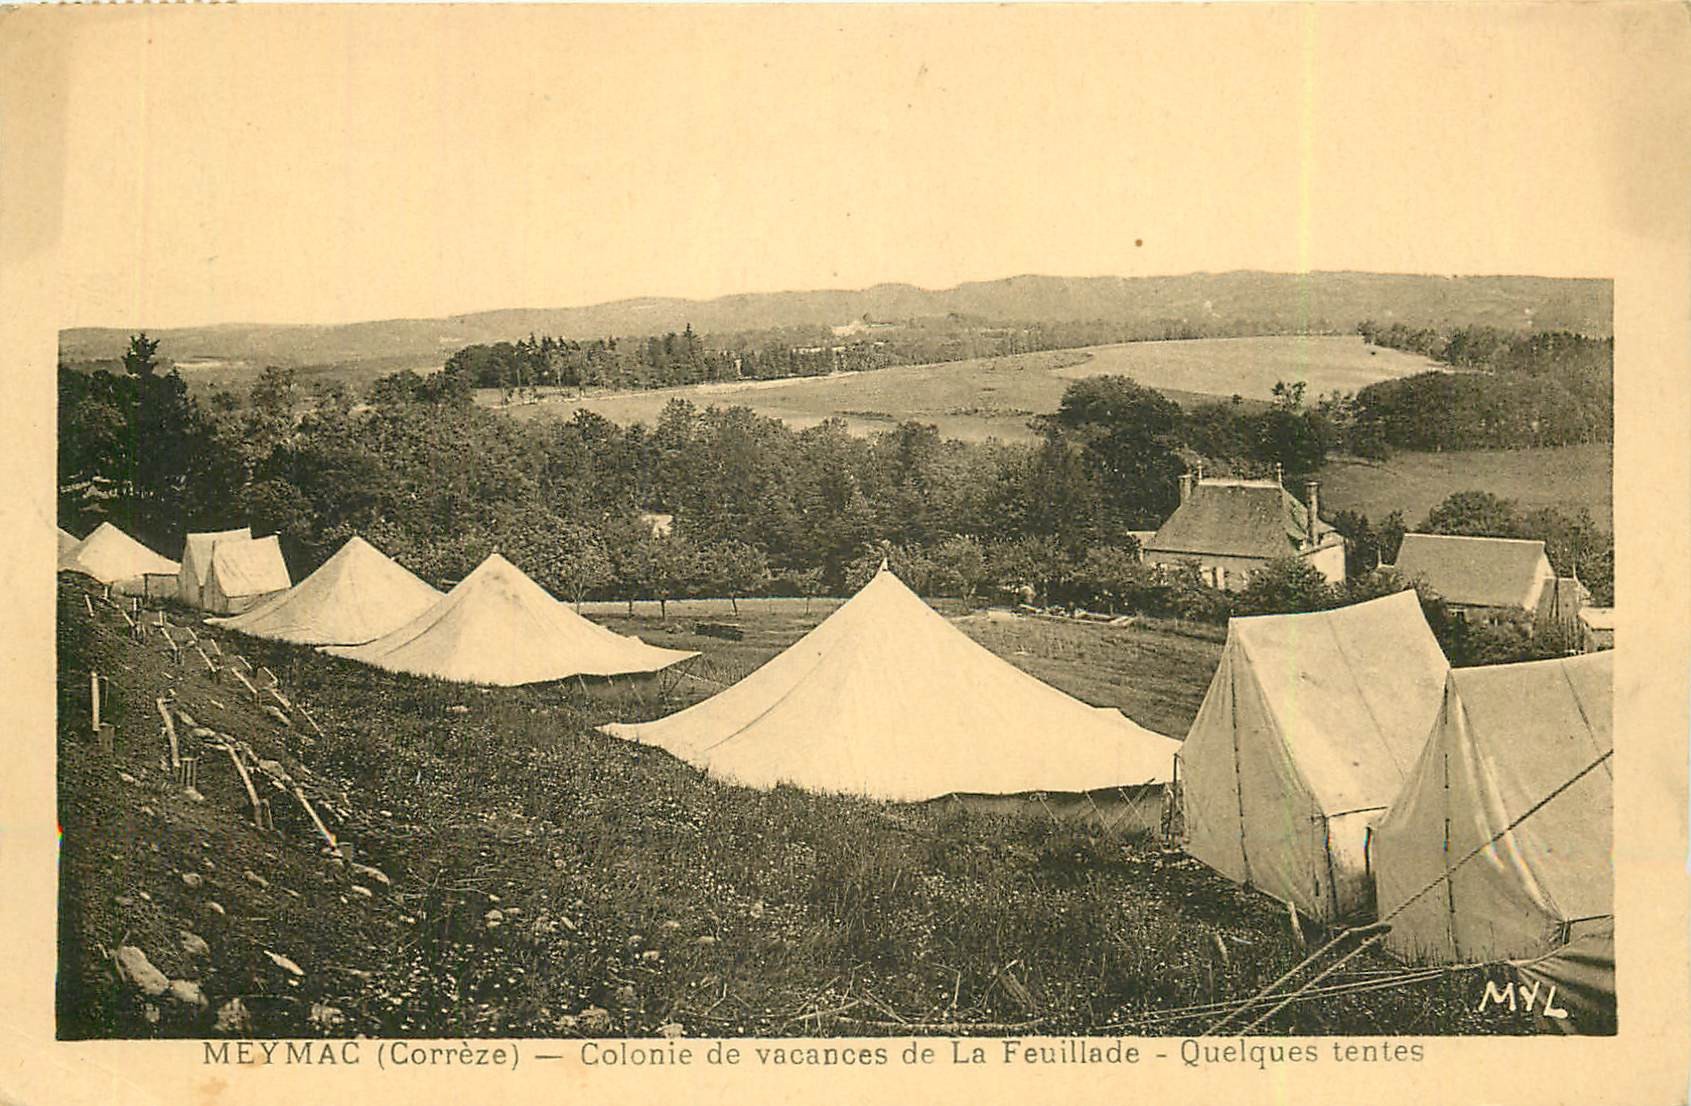 19 MEYMAC. "La Feuillade" tentes Colonie de vacances C.C.A.F.R.P 1932